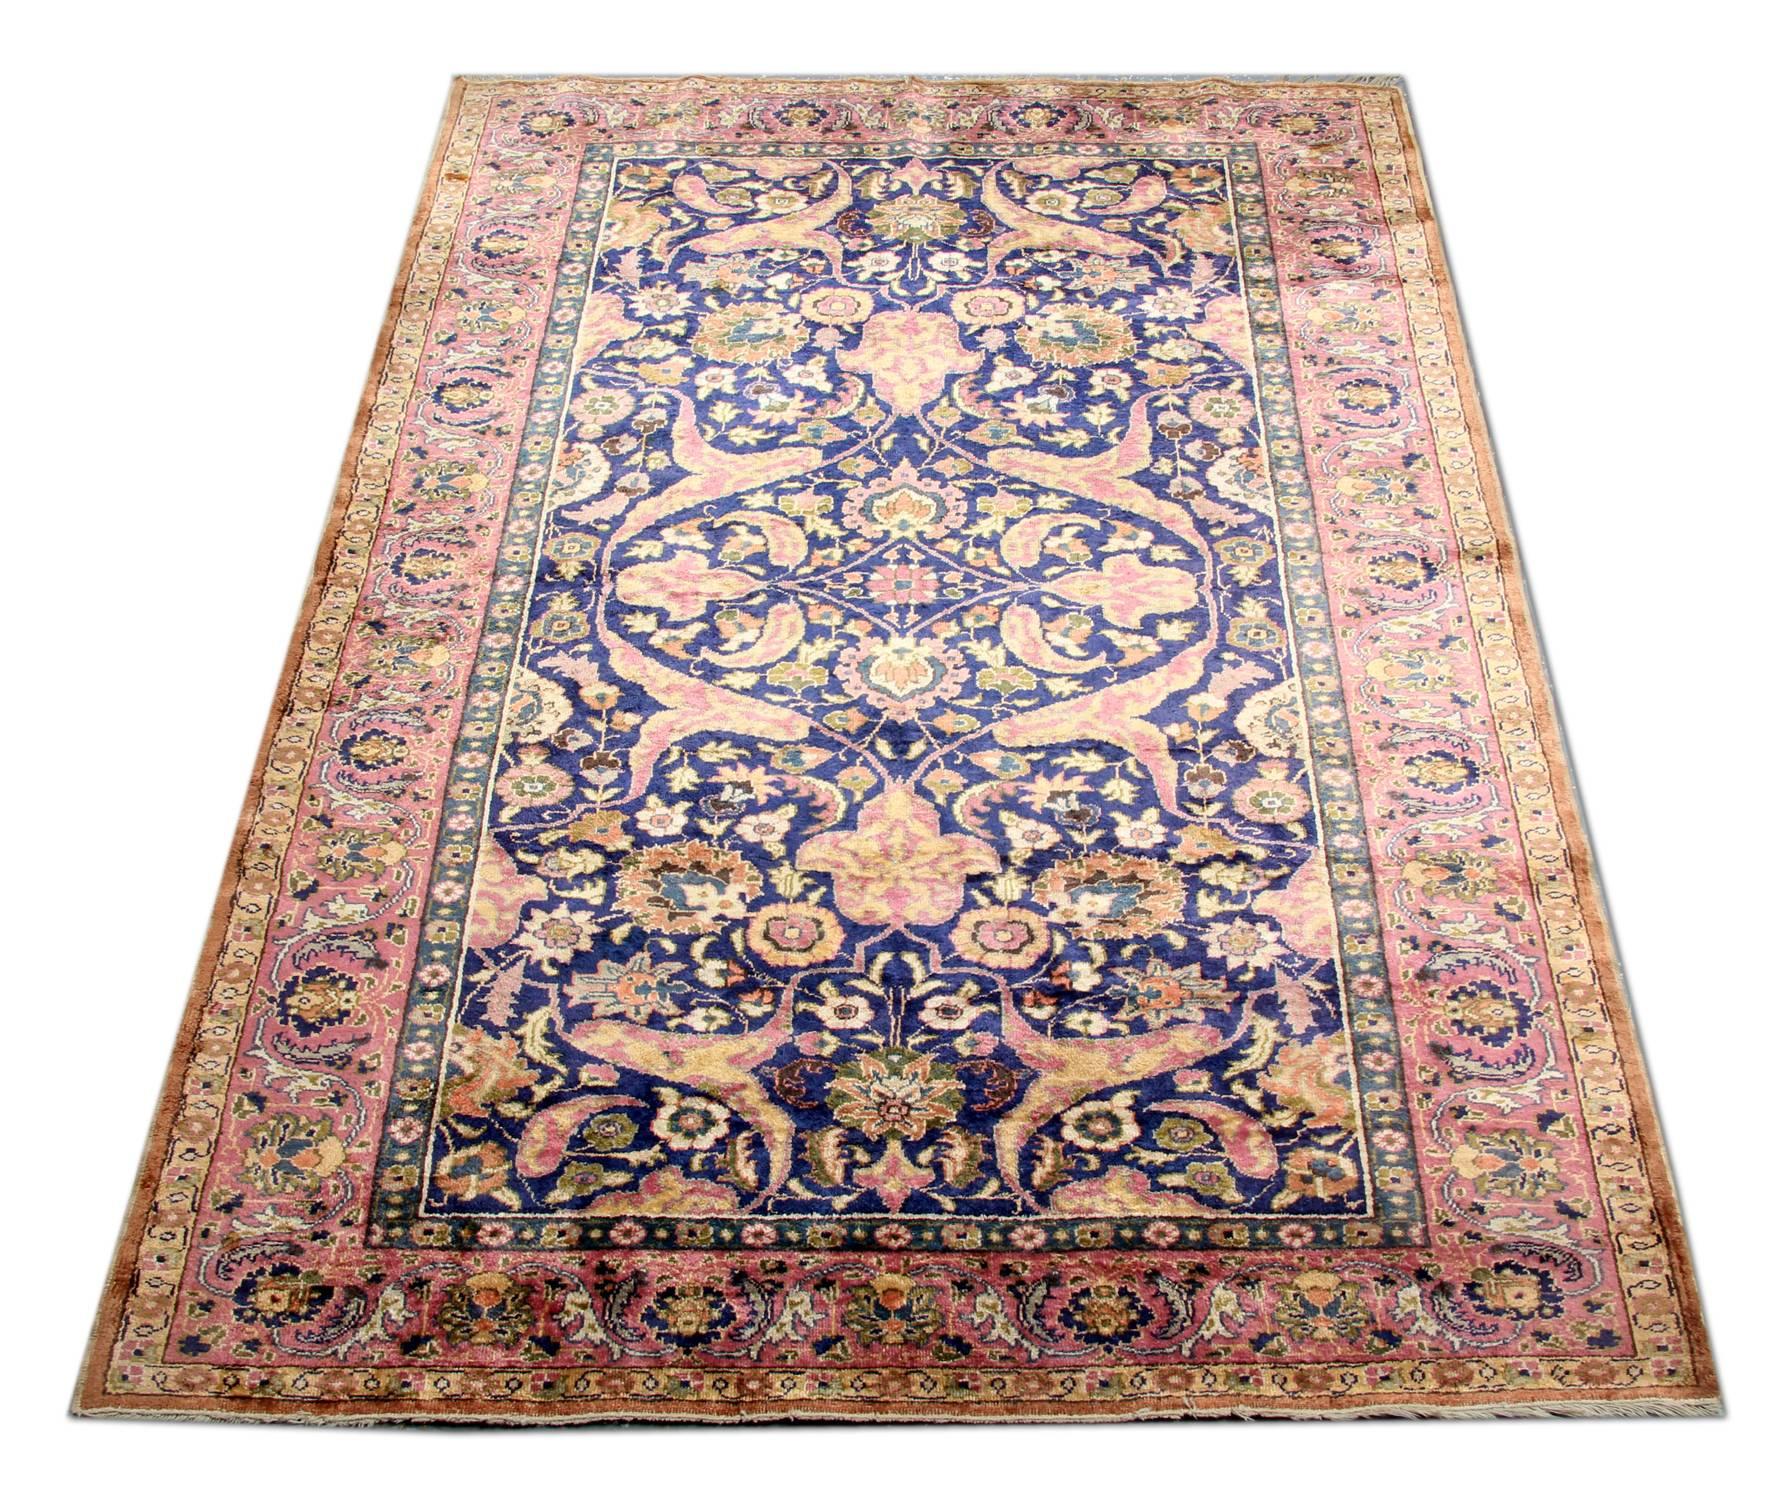 Il s'agit d'un exemple de tapis vintage finement noué à la main en provenance d'Anatolie centrale avec un motif floral classique sur tout le tapis, composé de petits motifs. Les poils de laine de haute qualité sur une solide base de soie et